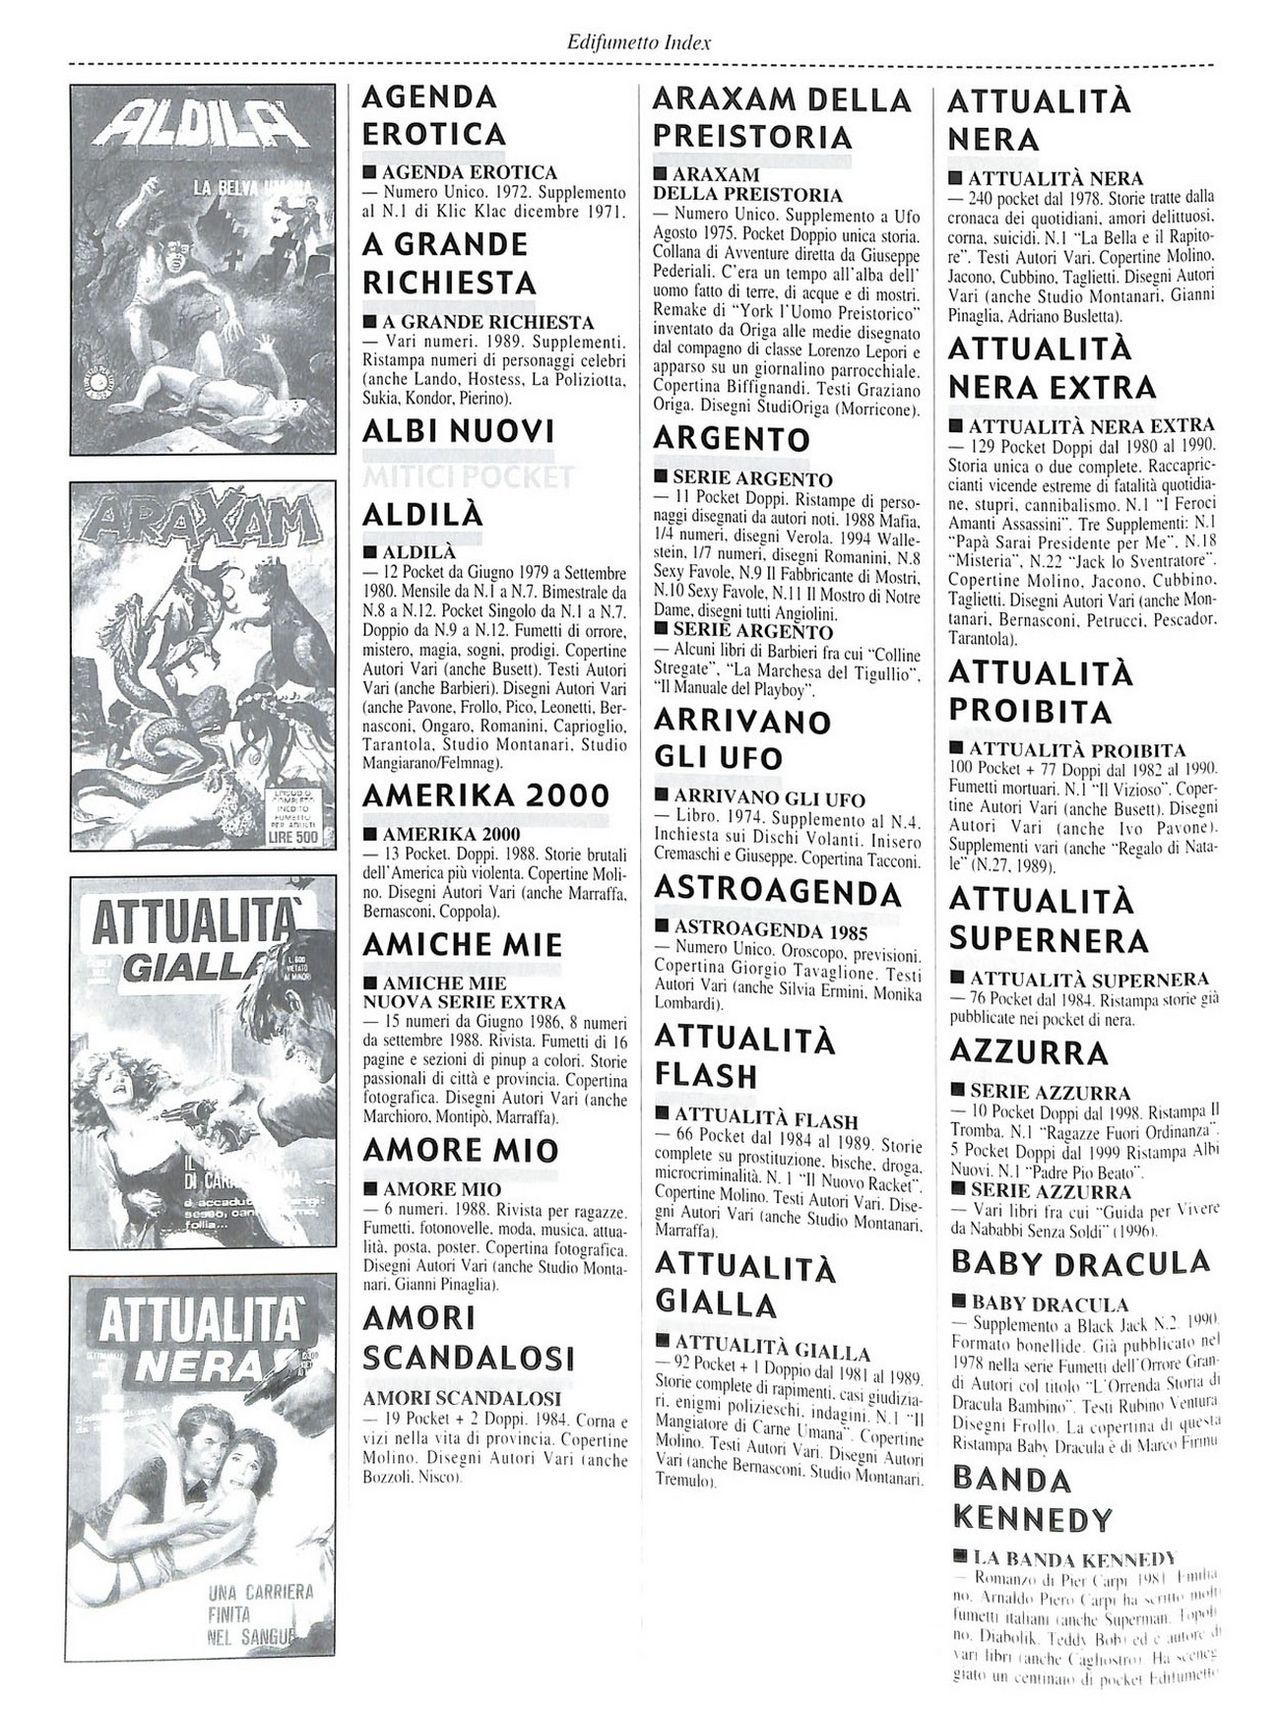 EdiFumetto index (Graziano Origa, 2002) [Italian] 79